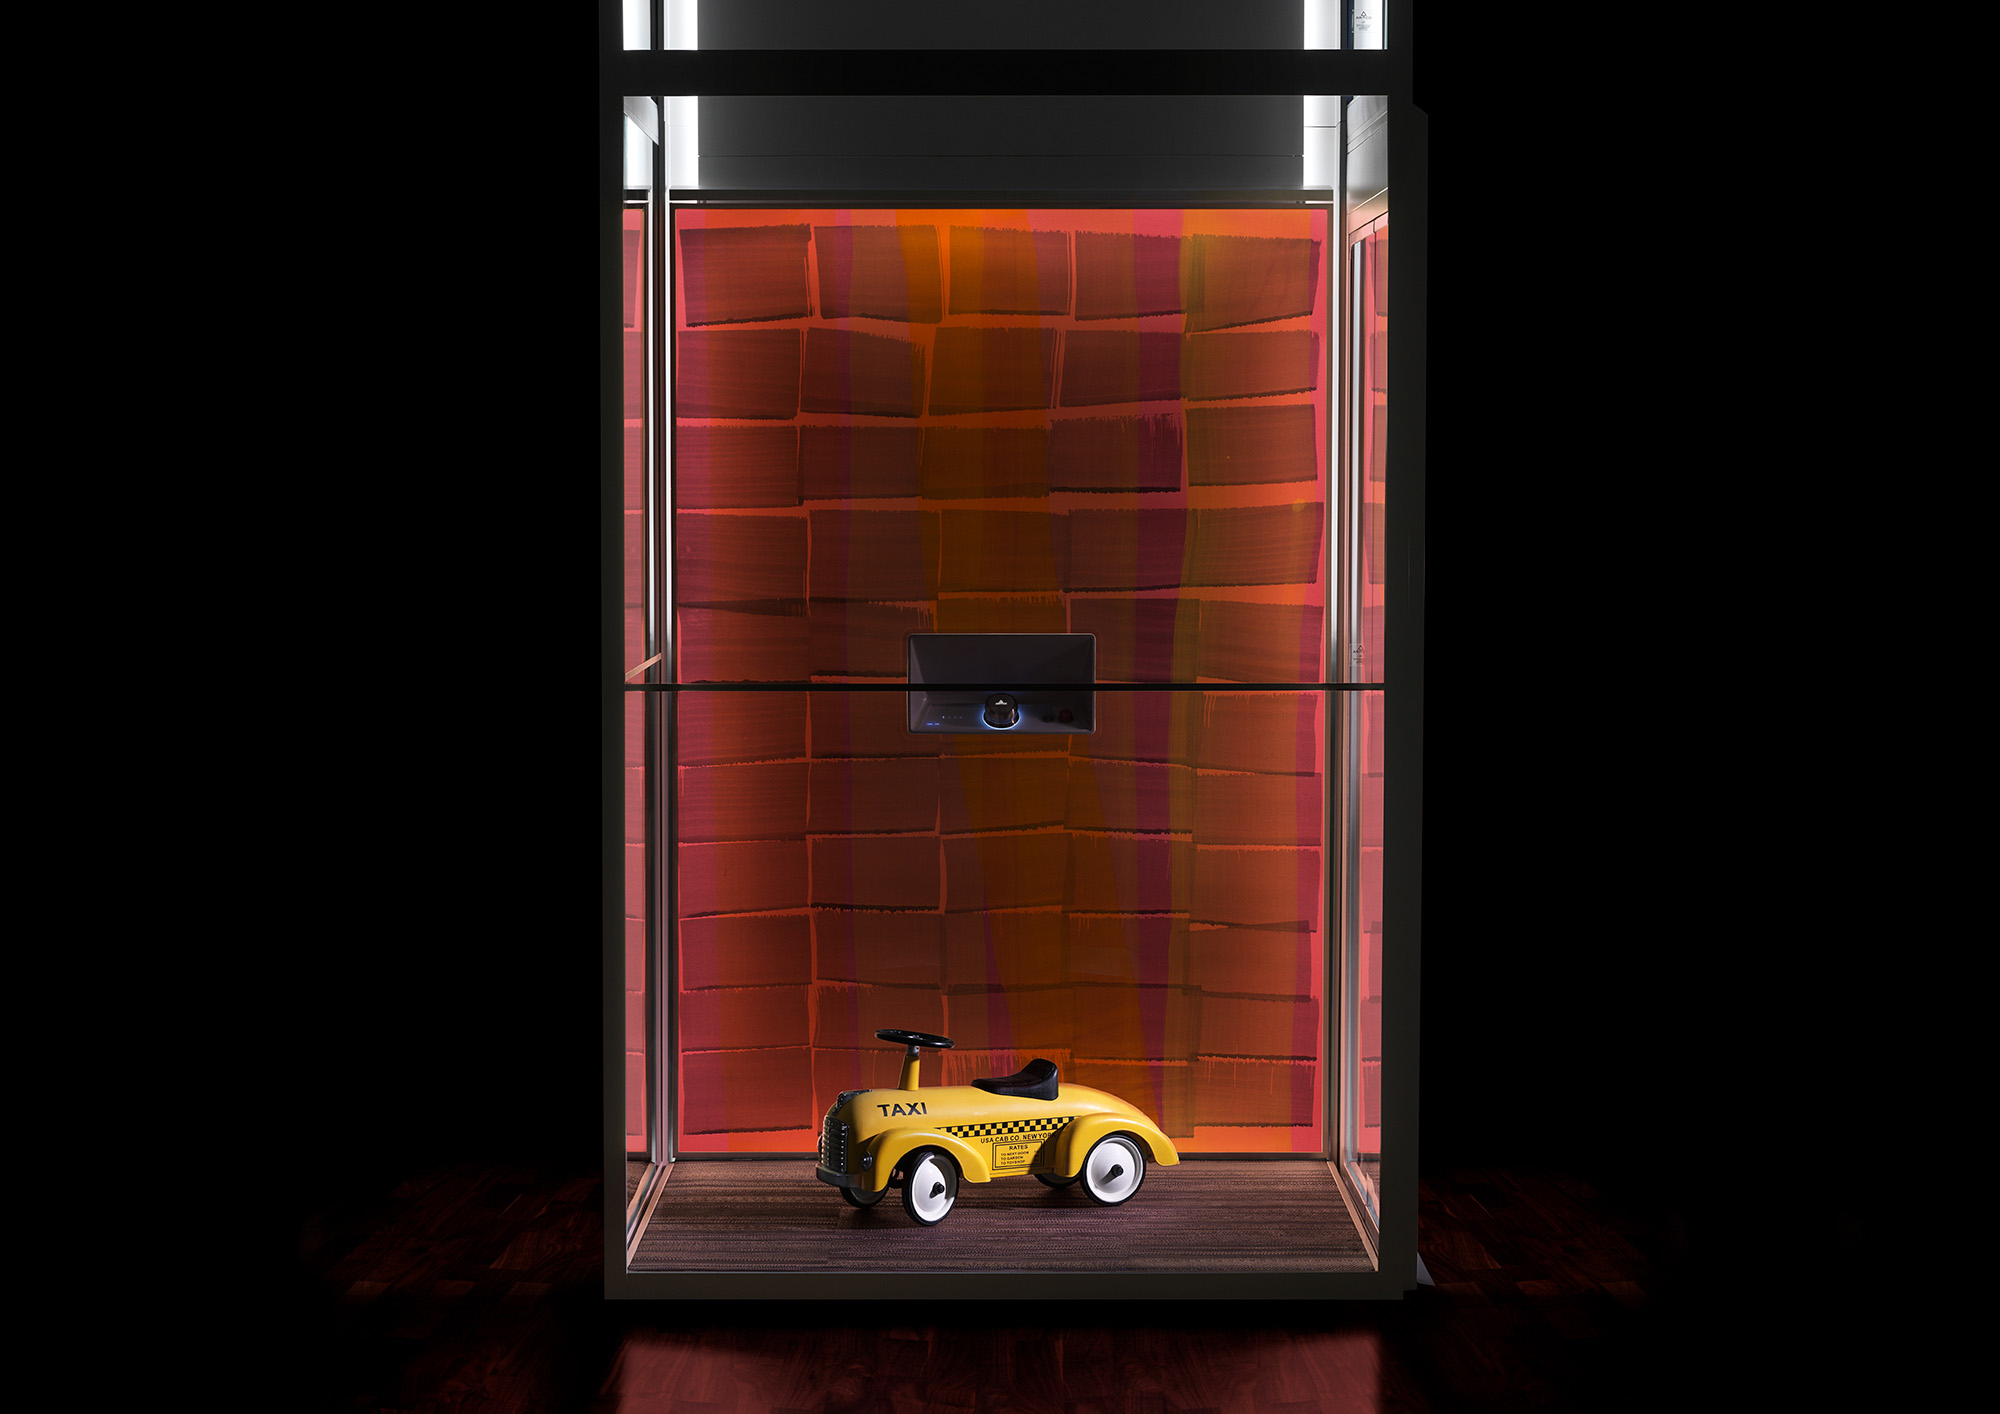 Aritco home lift with a DesignWall in orange